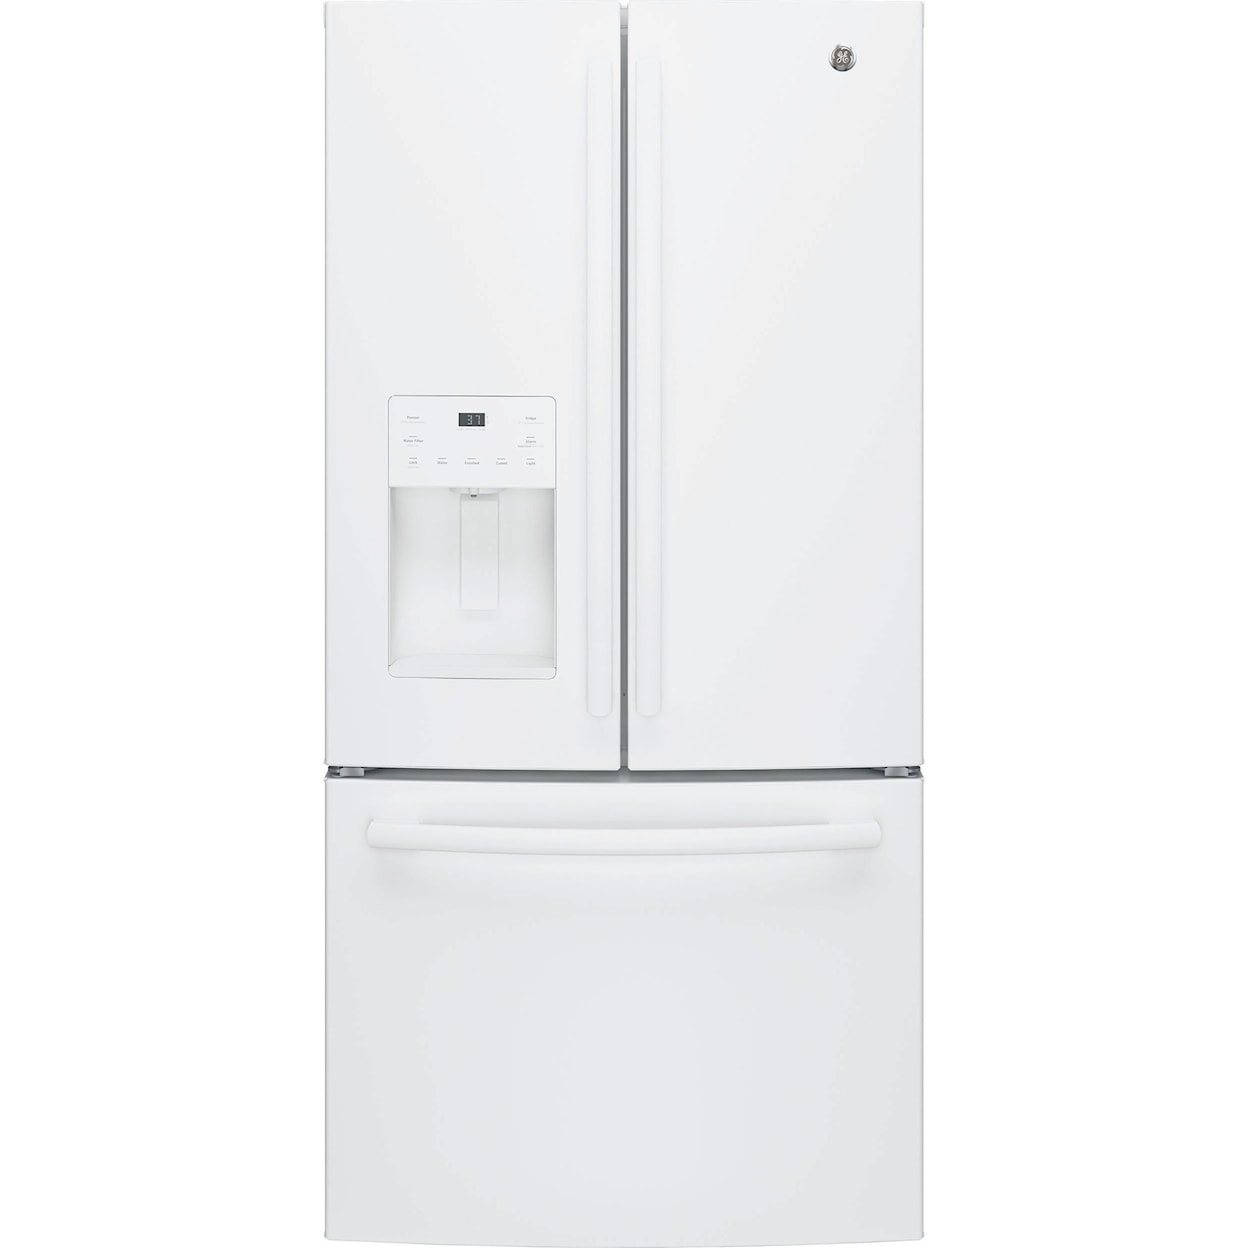 GE Appliances GE French Door Refrigerators 23.8 Cu. Ft. French-Door Refrigerator